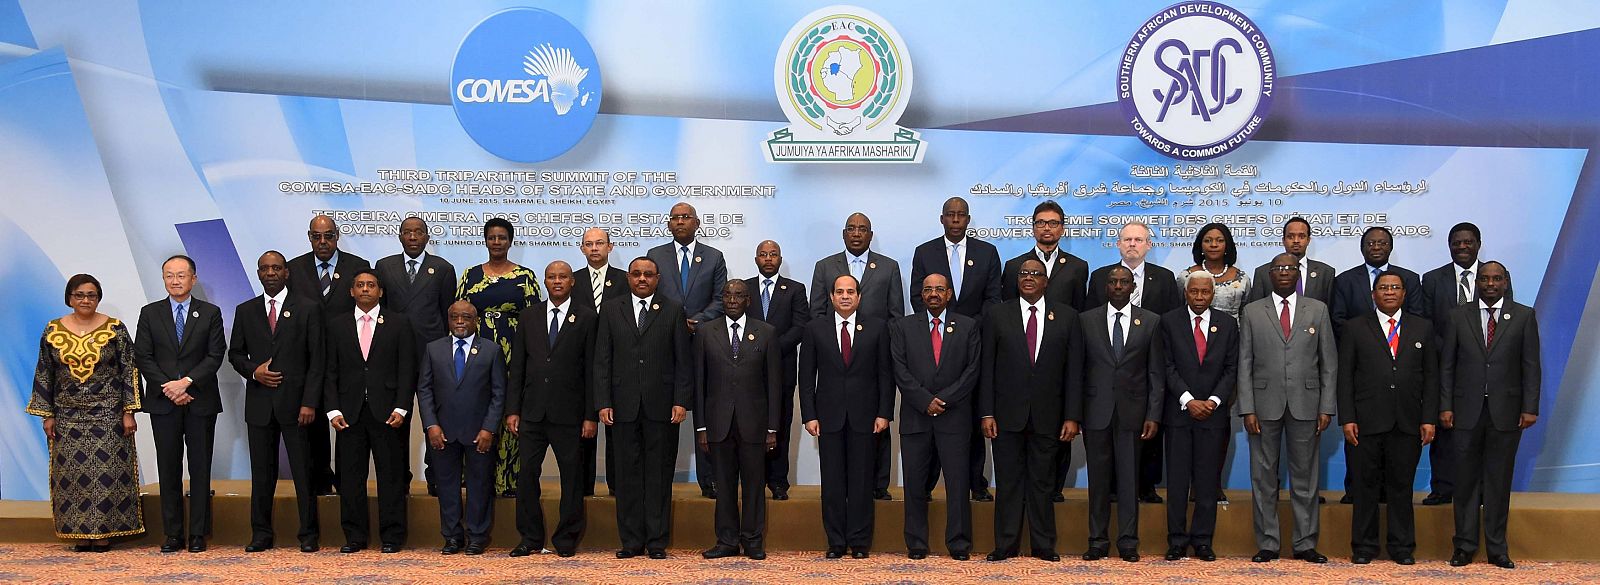 Cumbre de líderes africanos en Egipto